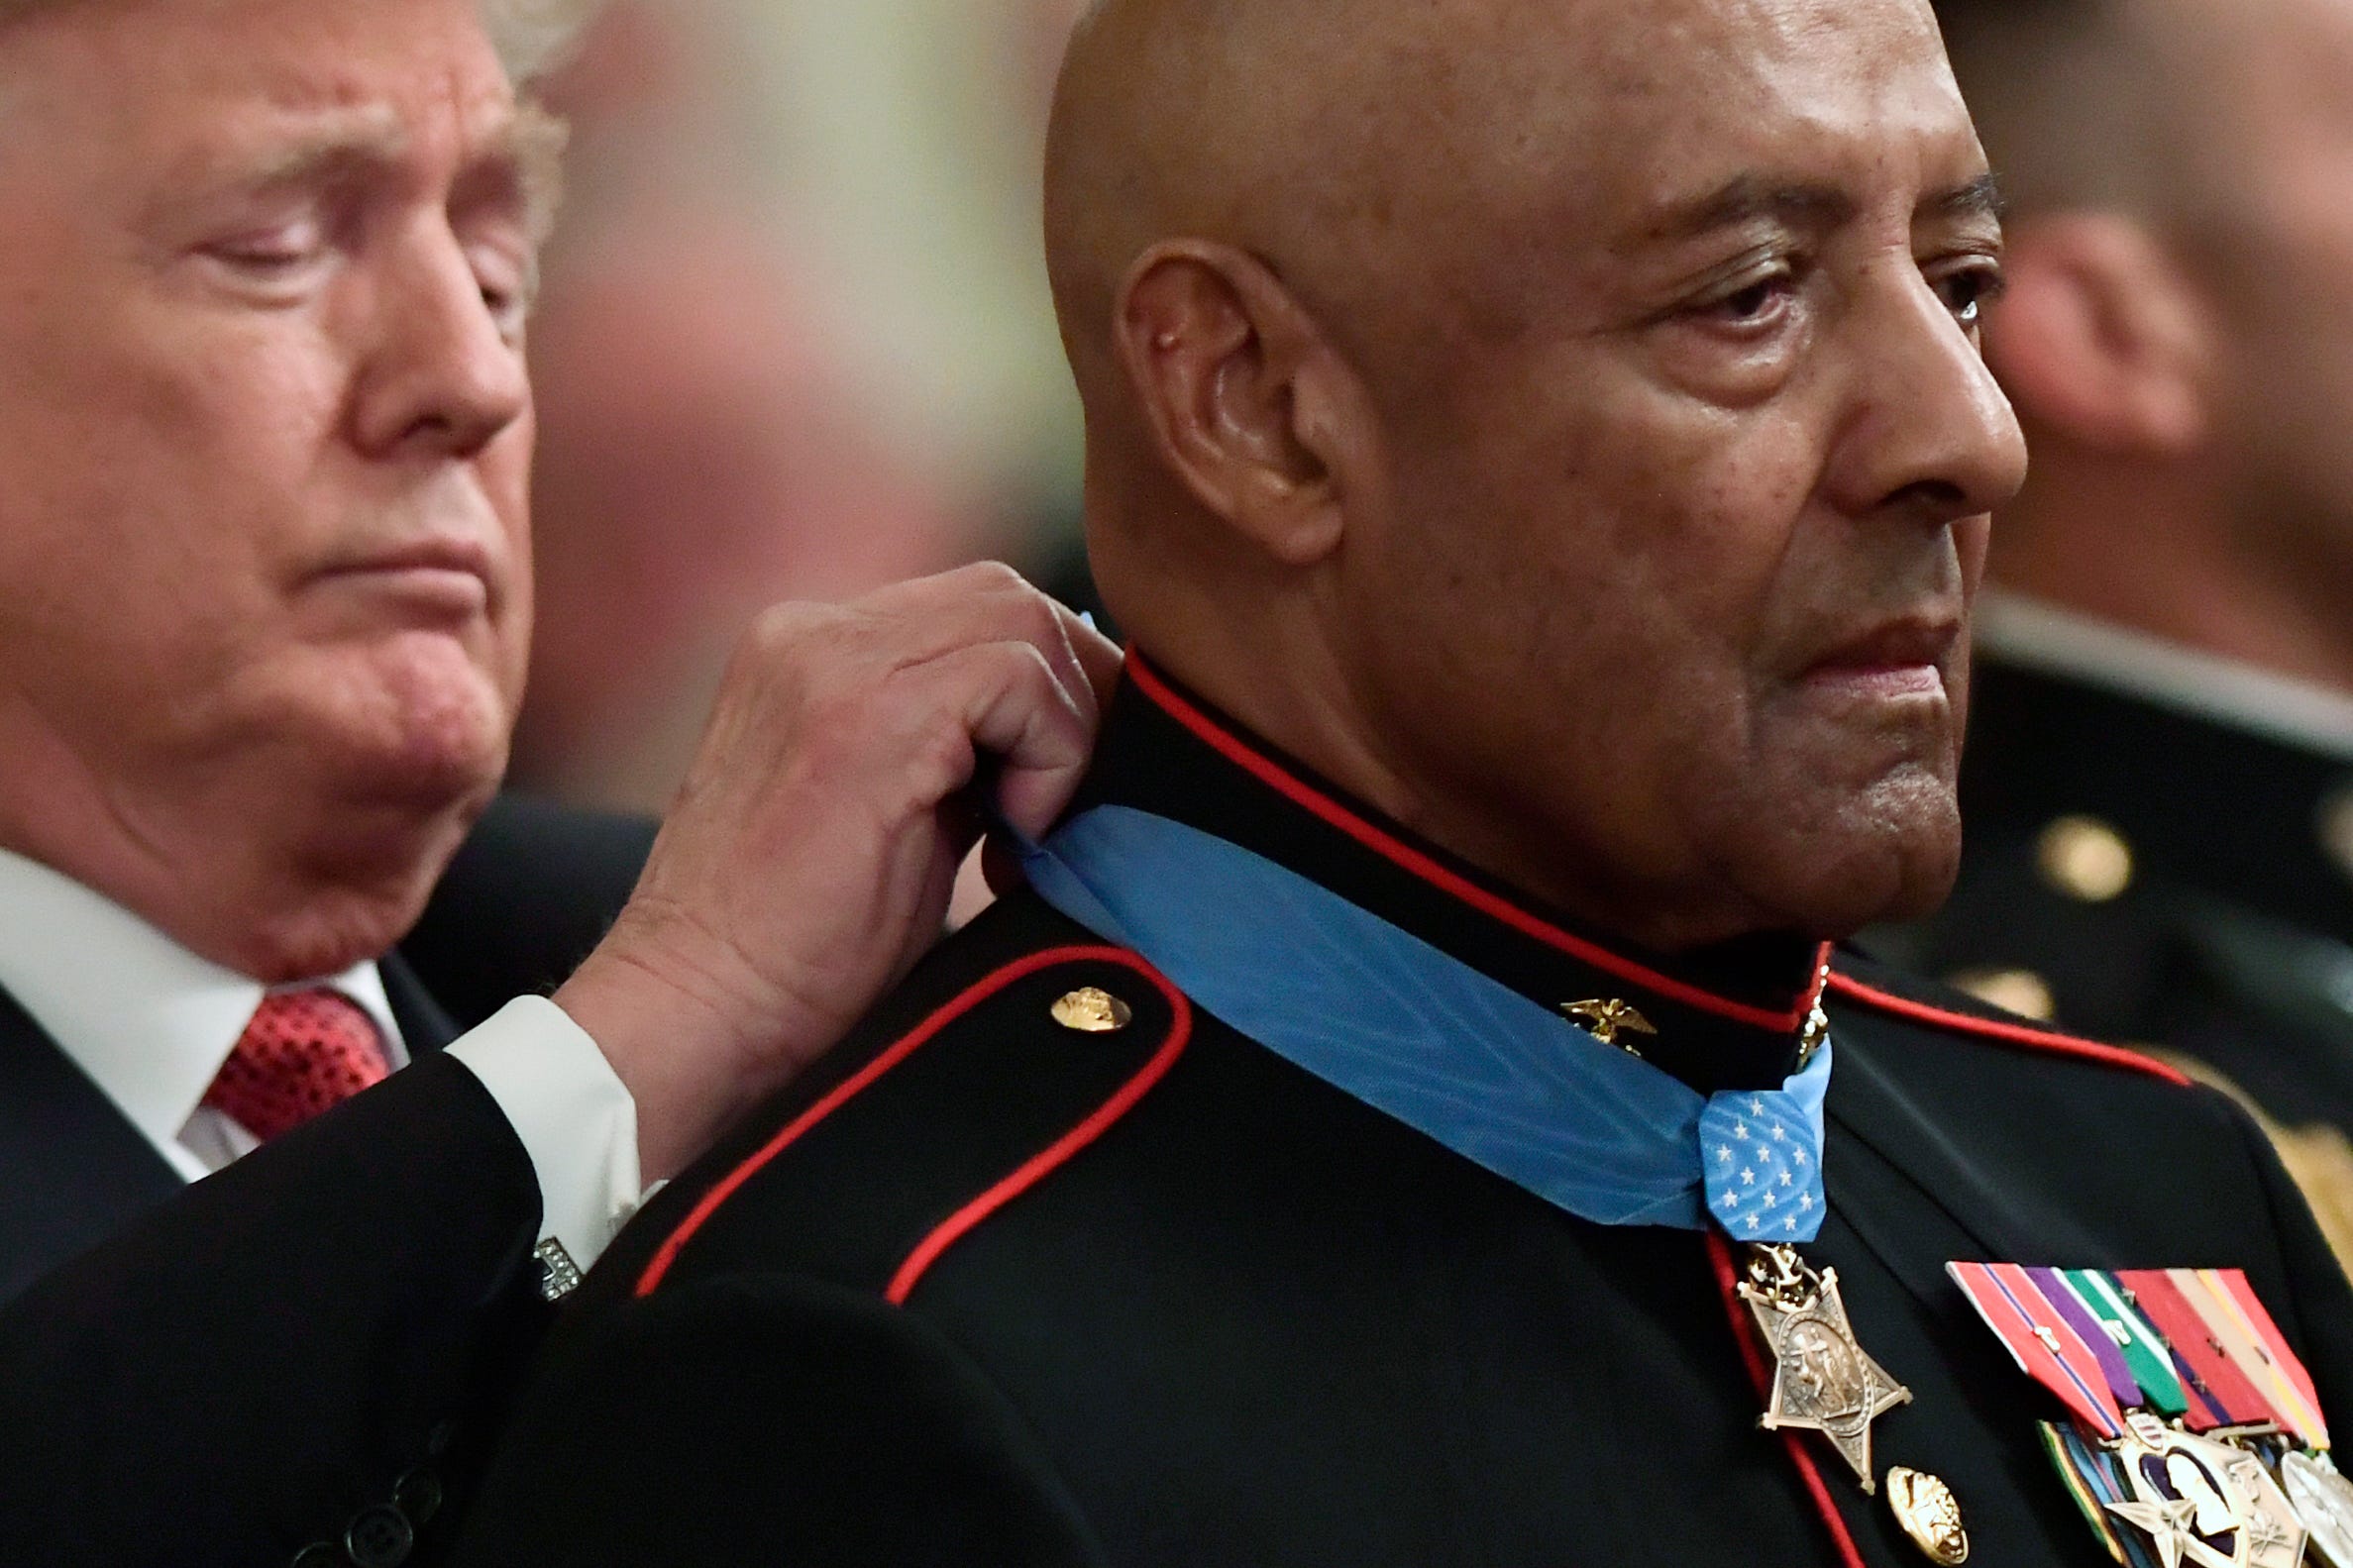 Donald Trump überreicht die Ehrenmedaille an den pensionierten Sgt. des US Marine Corps.  Maj. John Canley